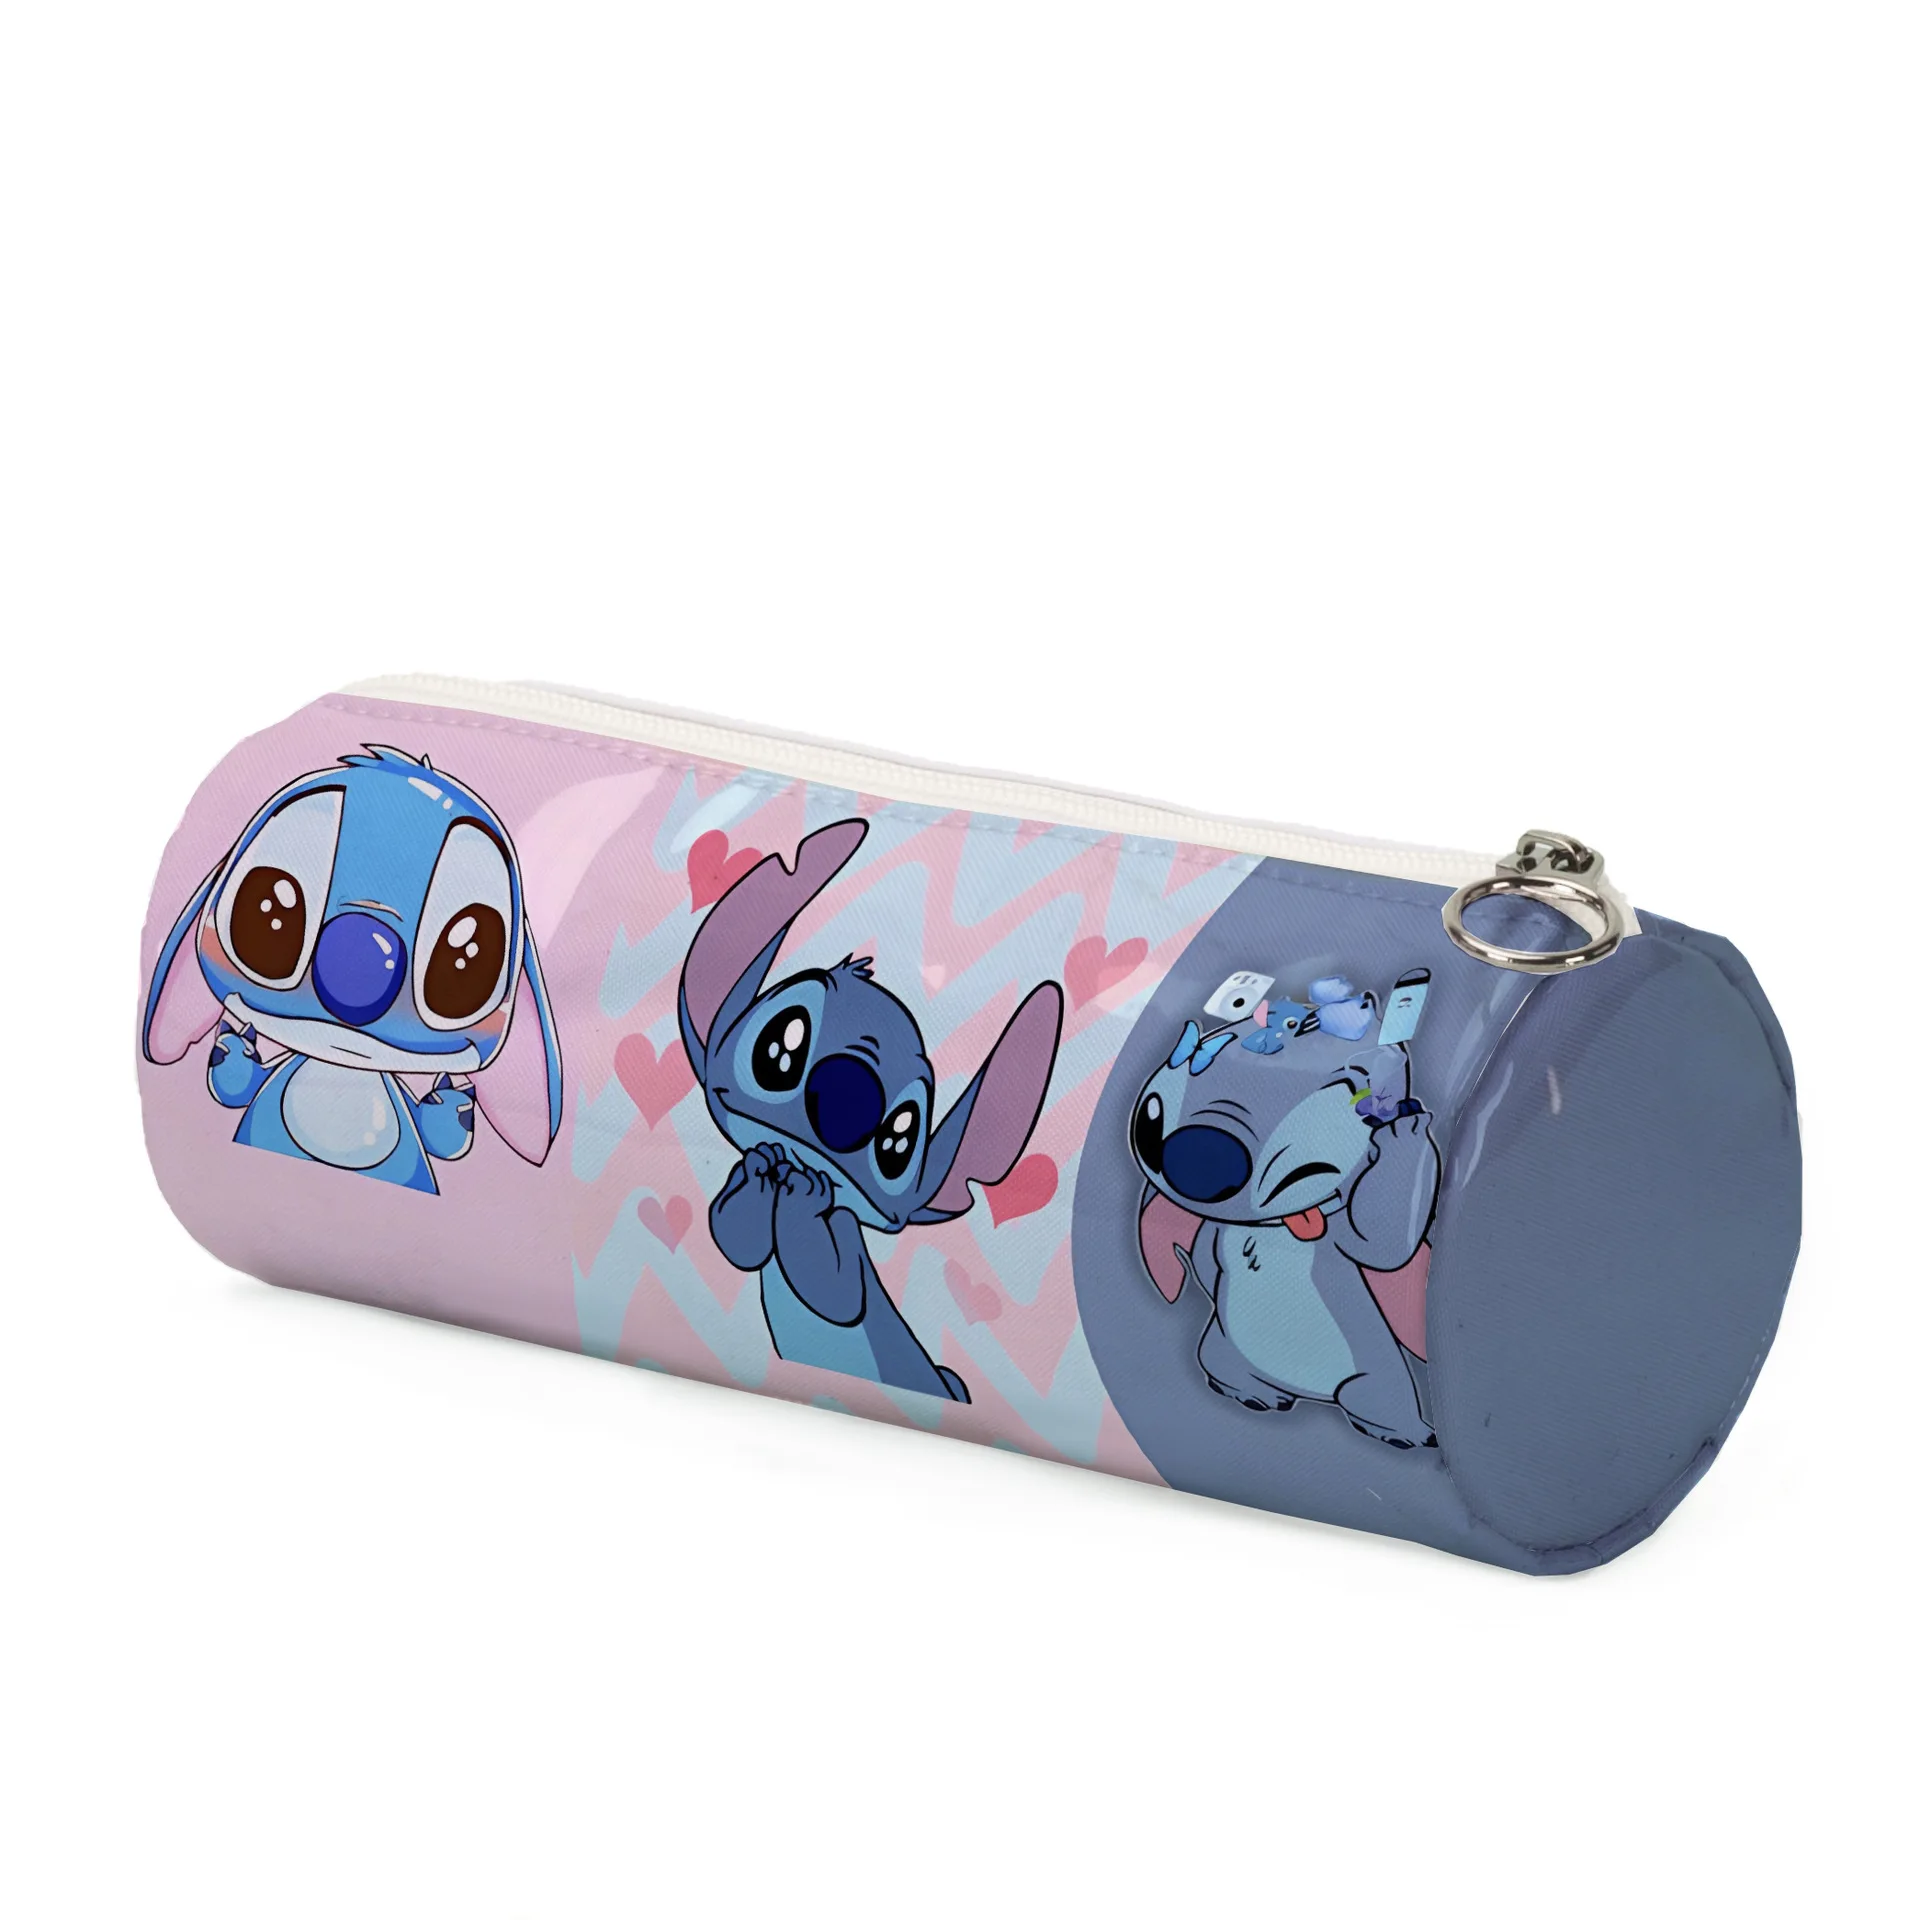 Disney Stitch Kinder Stift Tasche Zylinder ppc Film große Kapazität Bleistift Tasche für Kinder niedlichen Cartoon gedruckt Schreibwaren Tasche Geschenke